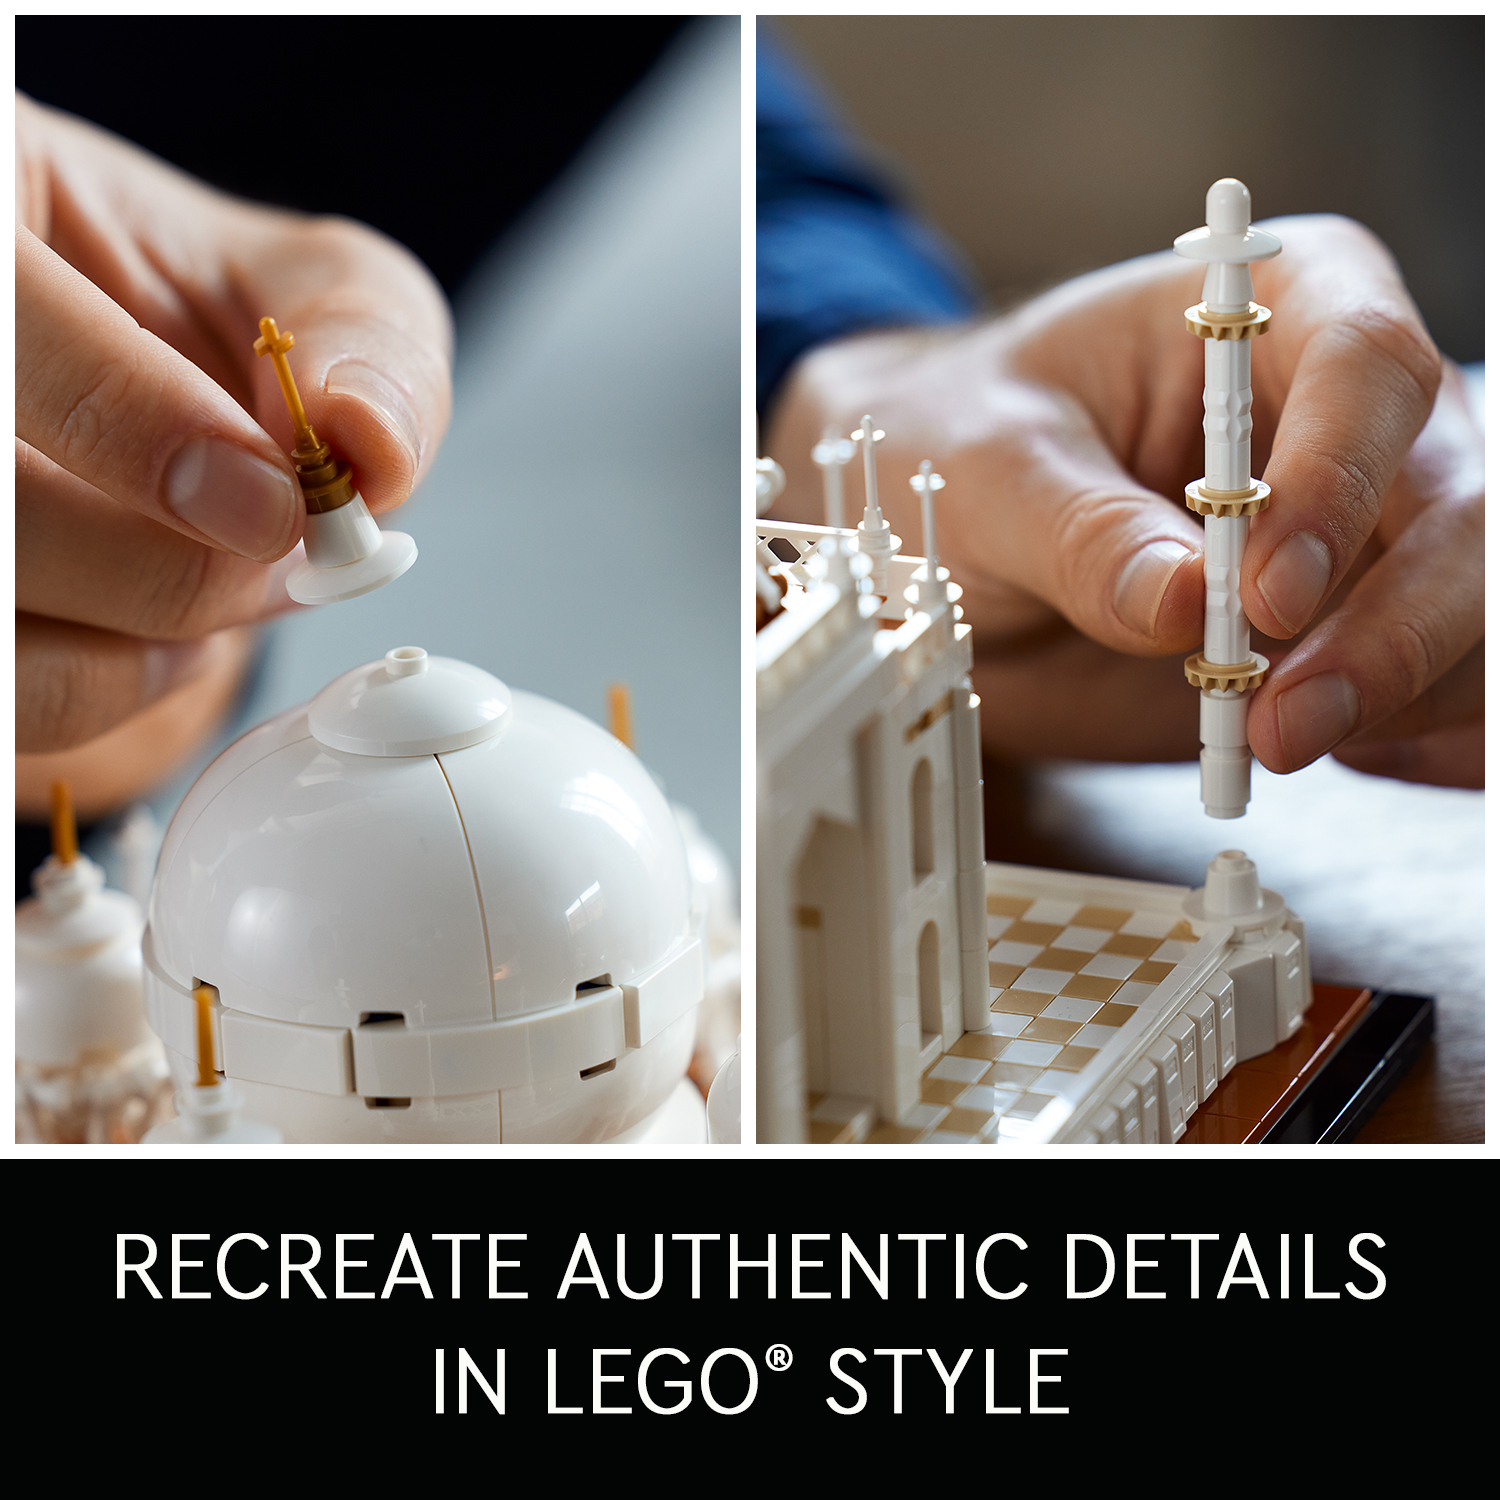 LEGO Architecture All 21056 Lâu Đài Taj Mahal (2022 chi tiết)